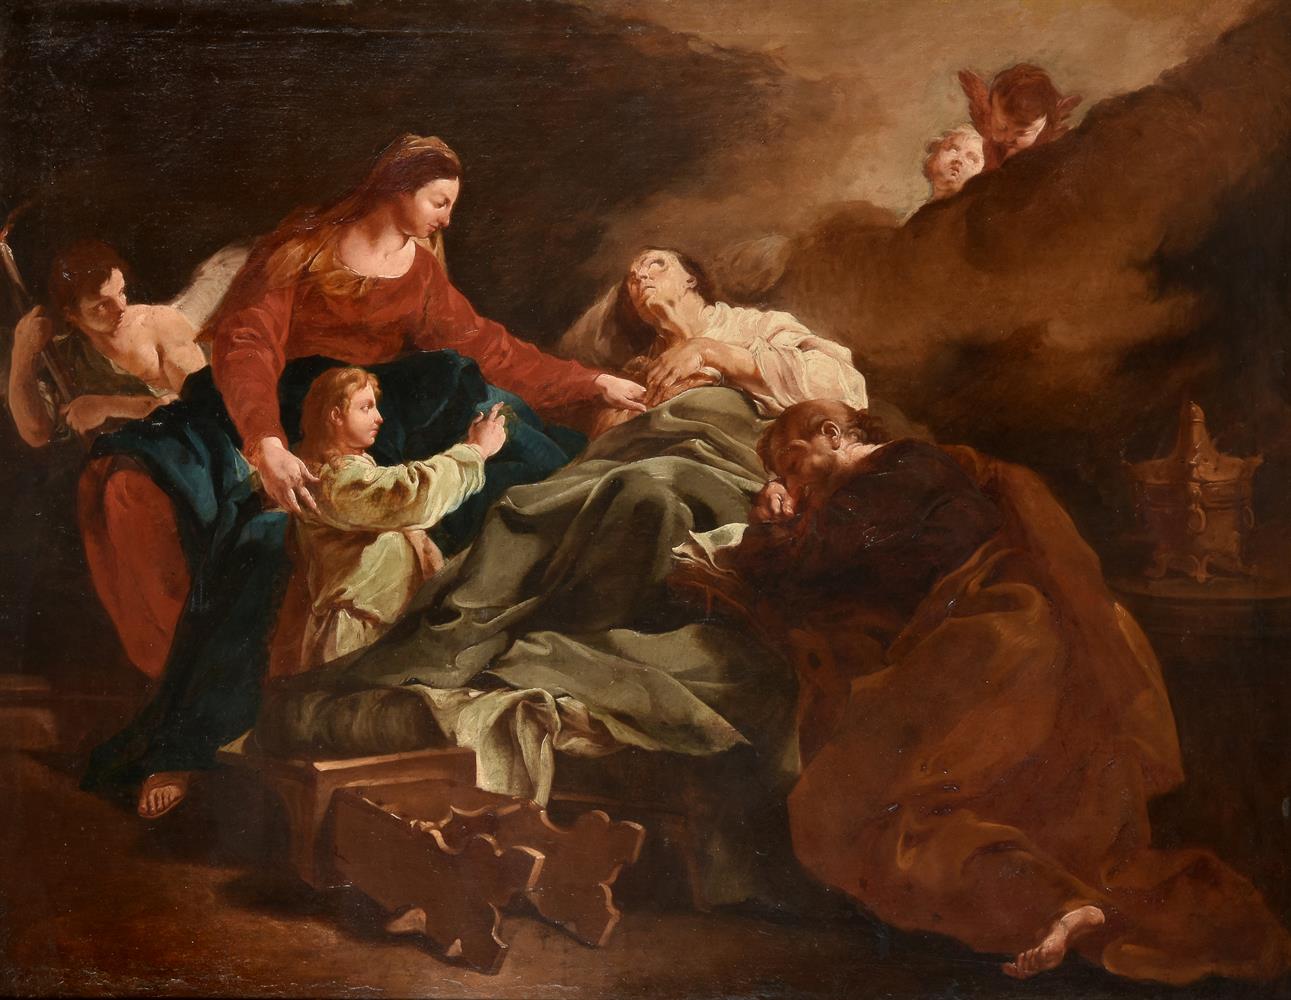 After Giovanni Battista Piazzetta, The Death of Saint Anne